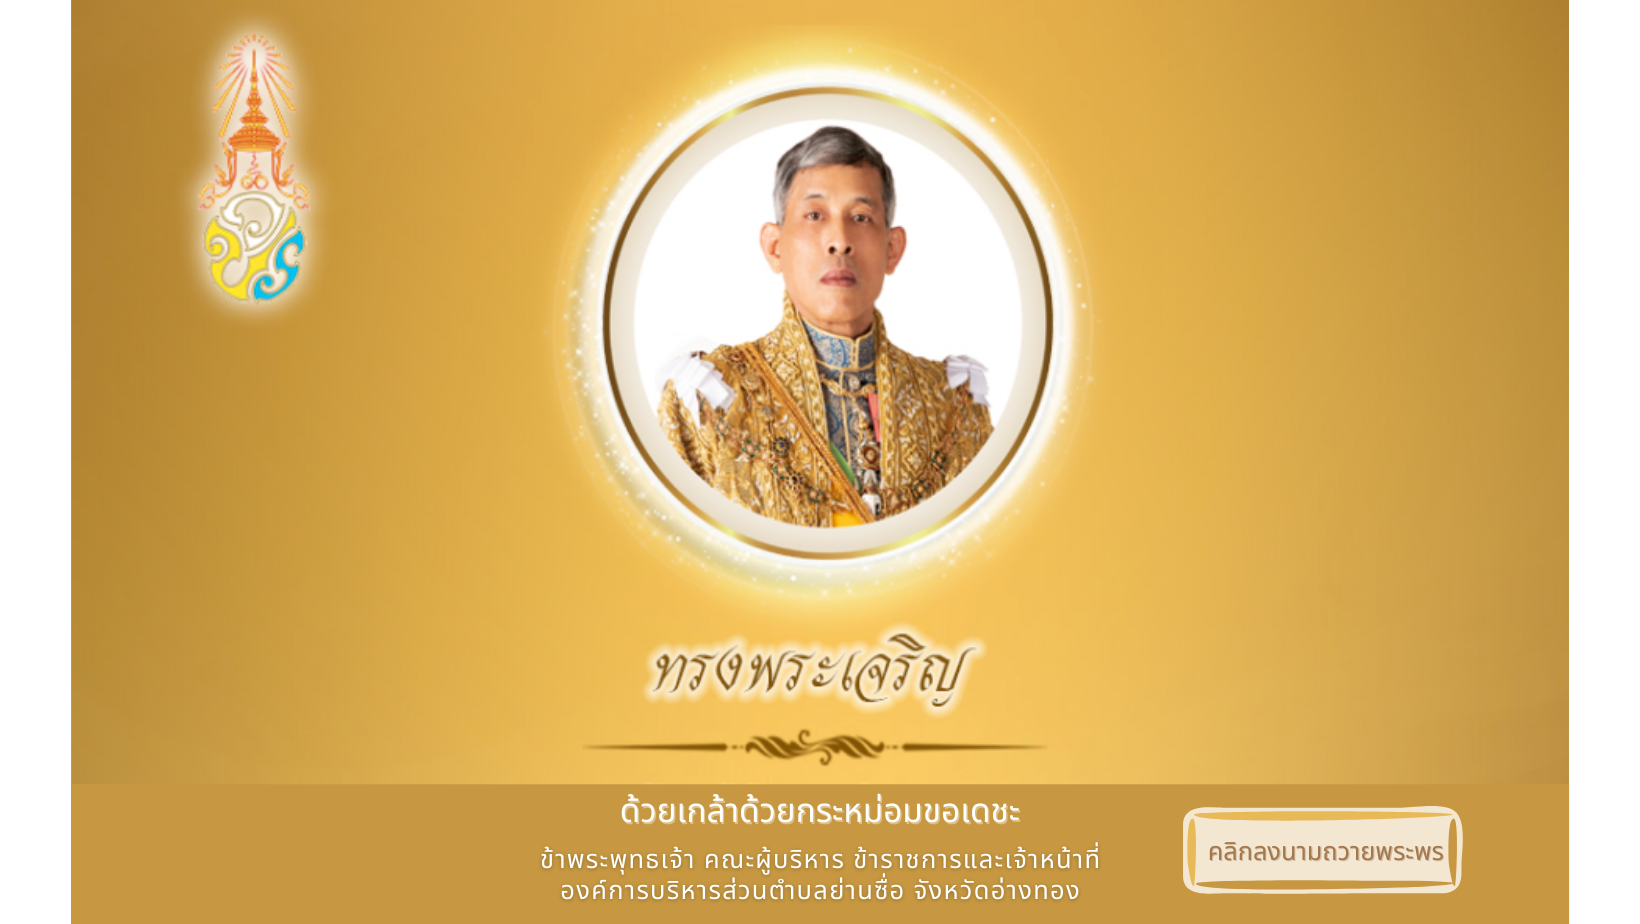 องค์การบริหารส่วนตำบลย่านซื่อ ขอเชิญประชาชนชาวไทย ร่วมลงนามถวายพระพร เนื่องในวันฉัตรมงคล วันที่ 4 พฤษภาคม 2565 ตลอดเดือนพฤษภาคม